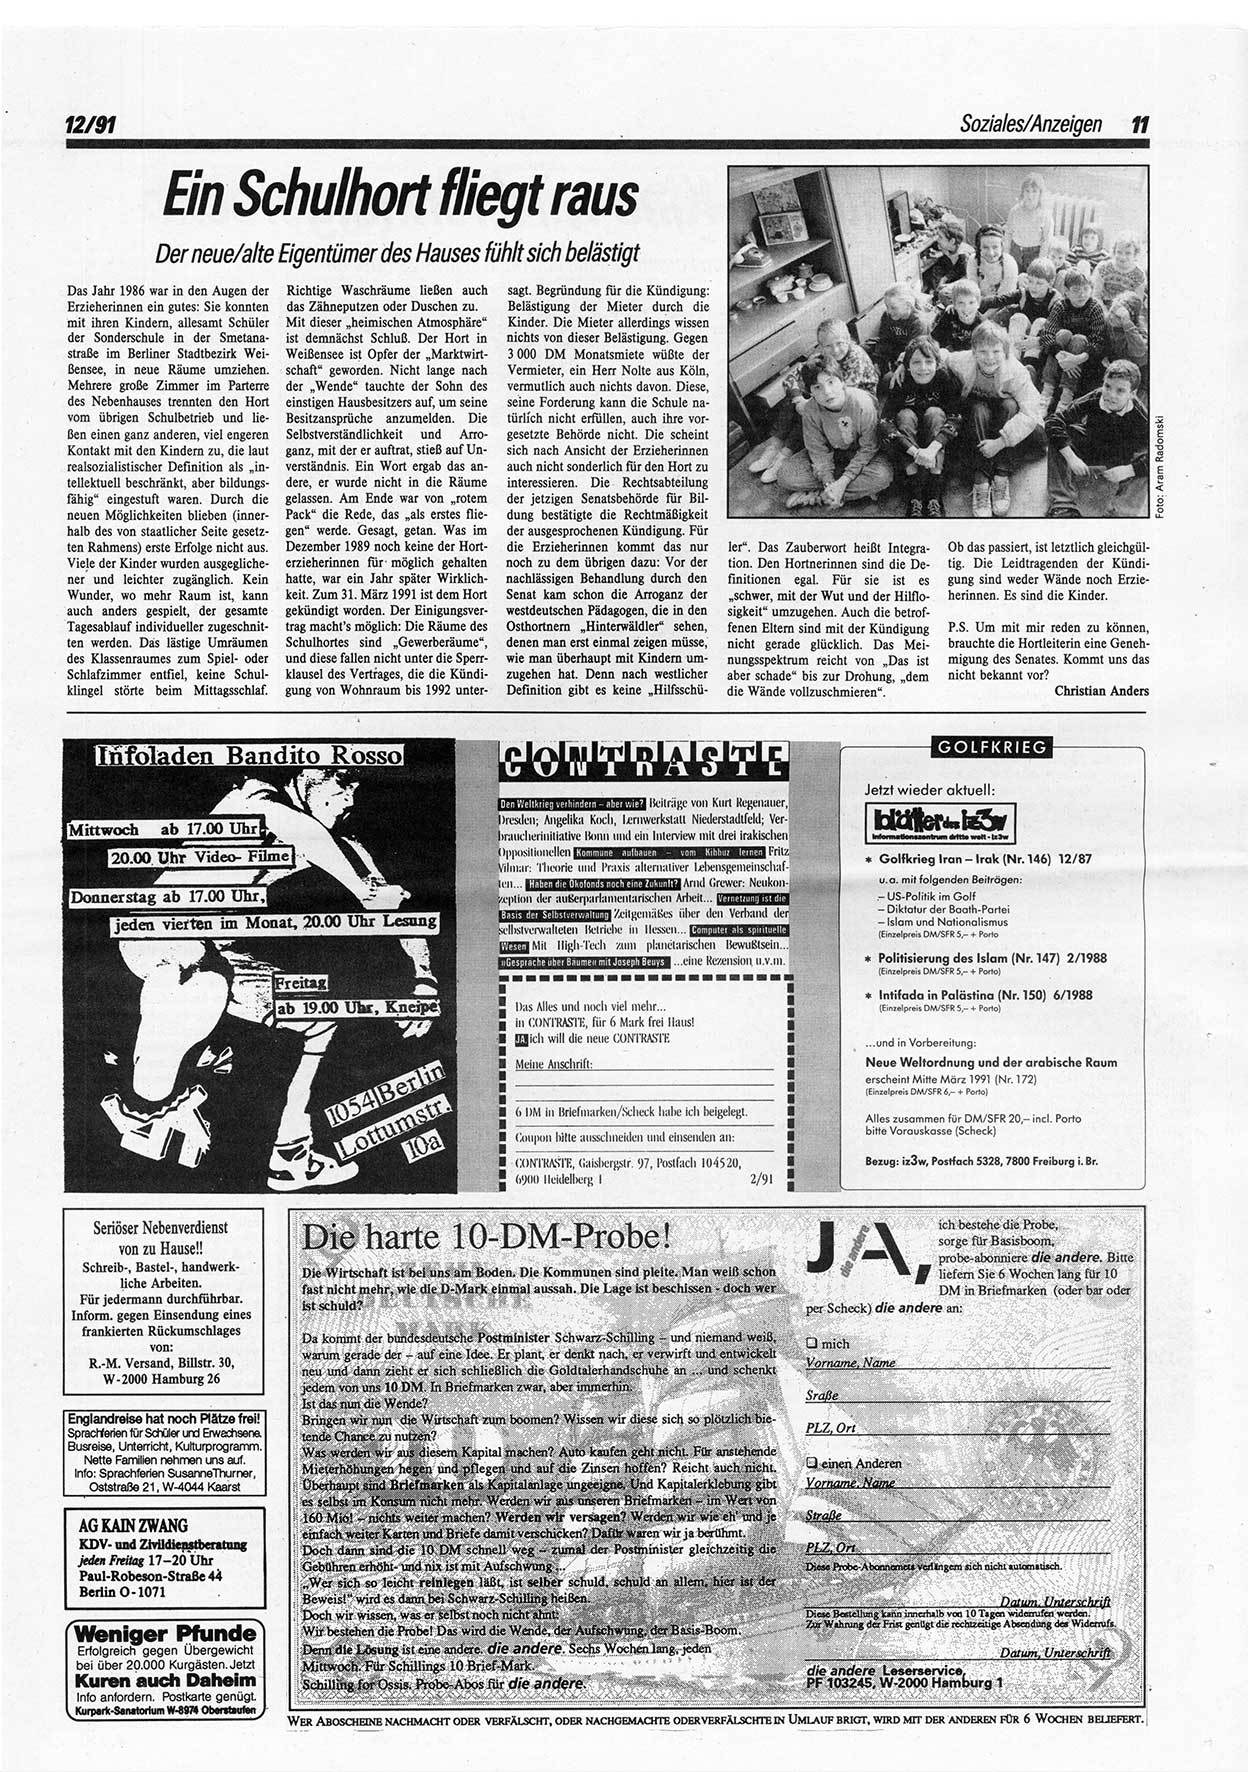 Die Andere, Unabhängige Wochenzeitung für Politik, Kultur und Kunst, Ausgabe 12 vom 20.3.1991, Seite 11 (And. W.-Zg. Ausg. 12 1991, S. 11)